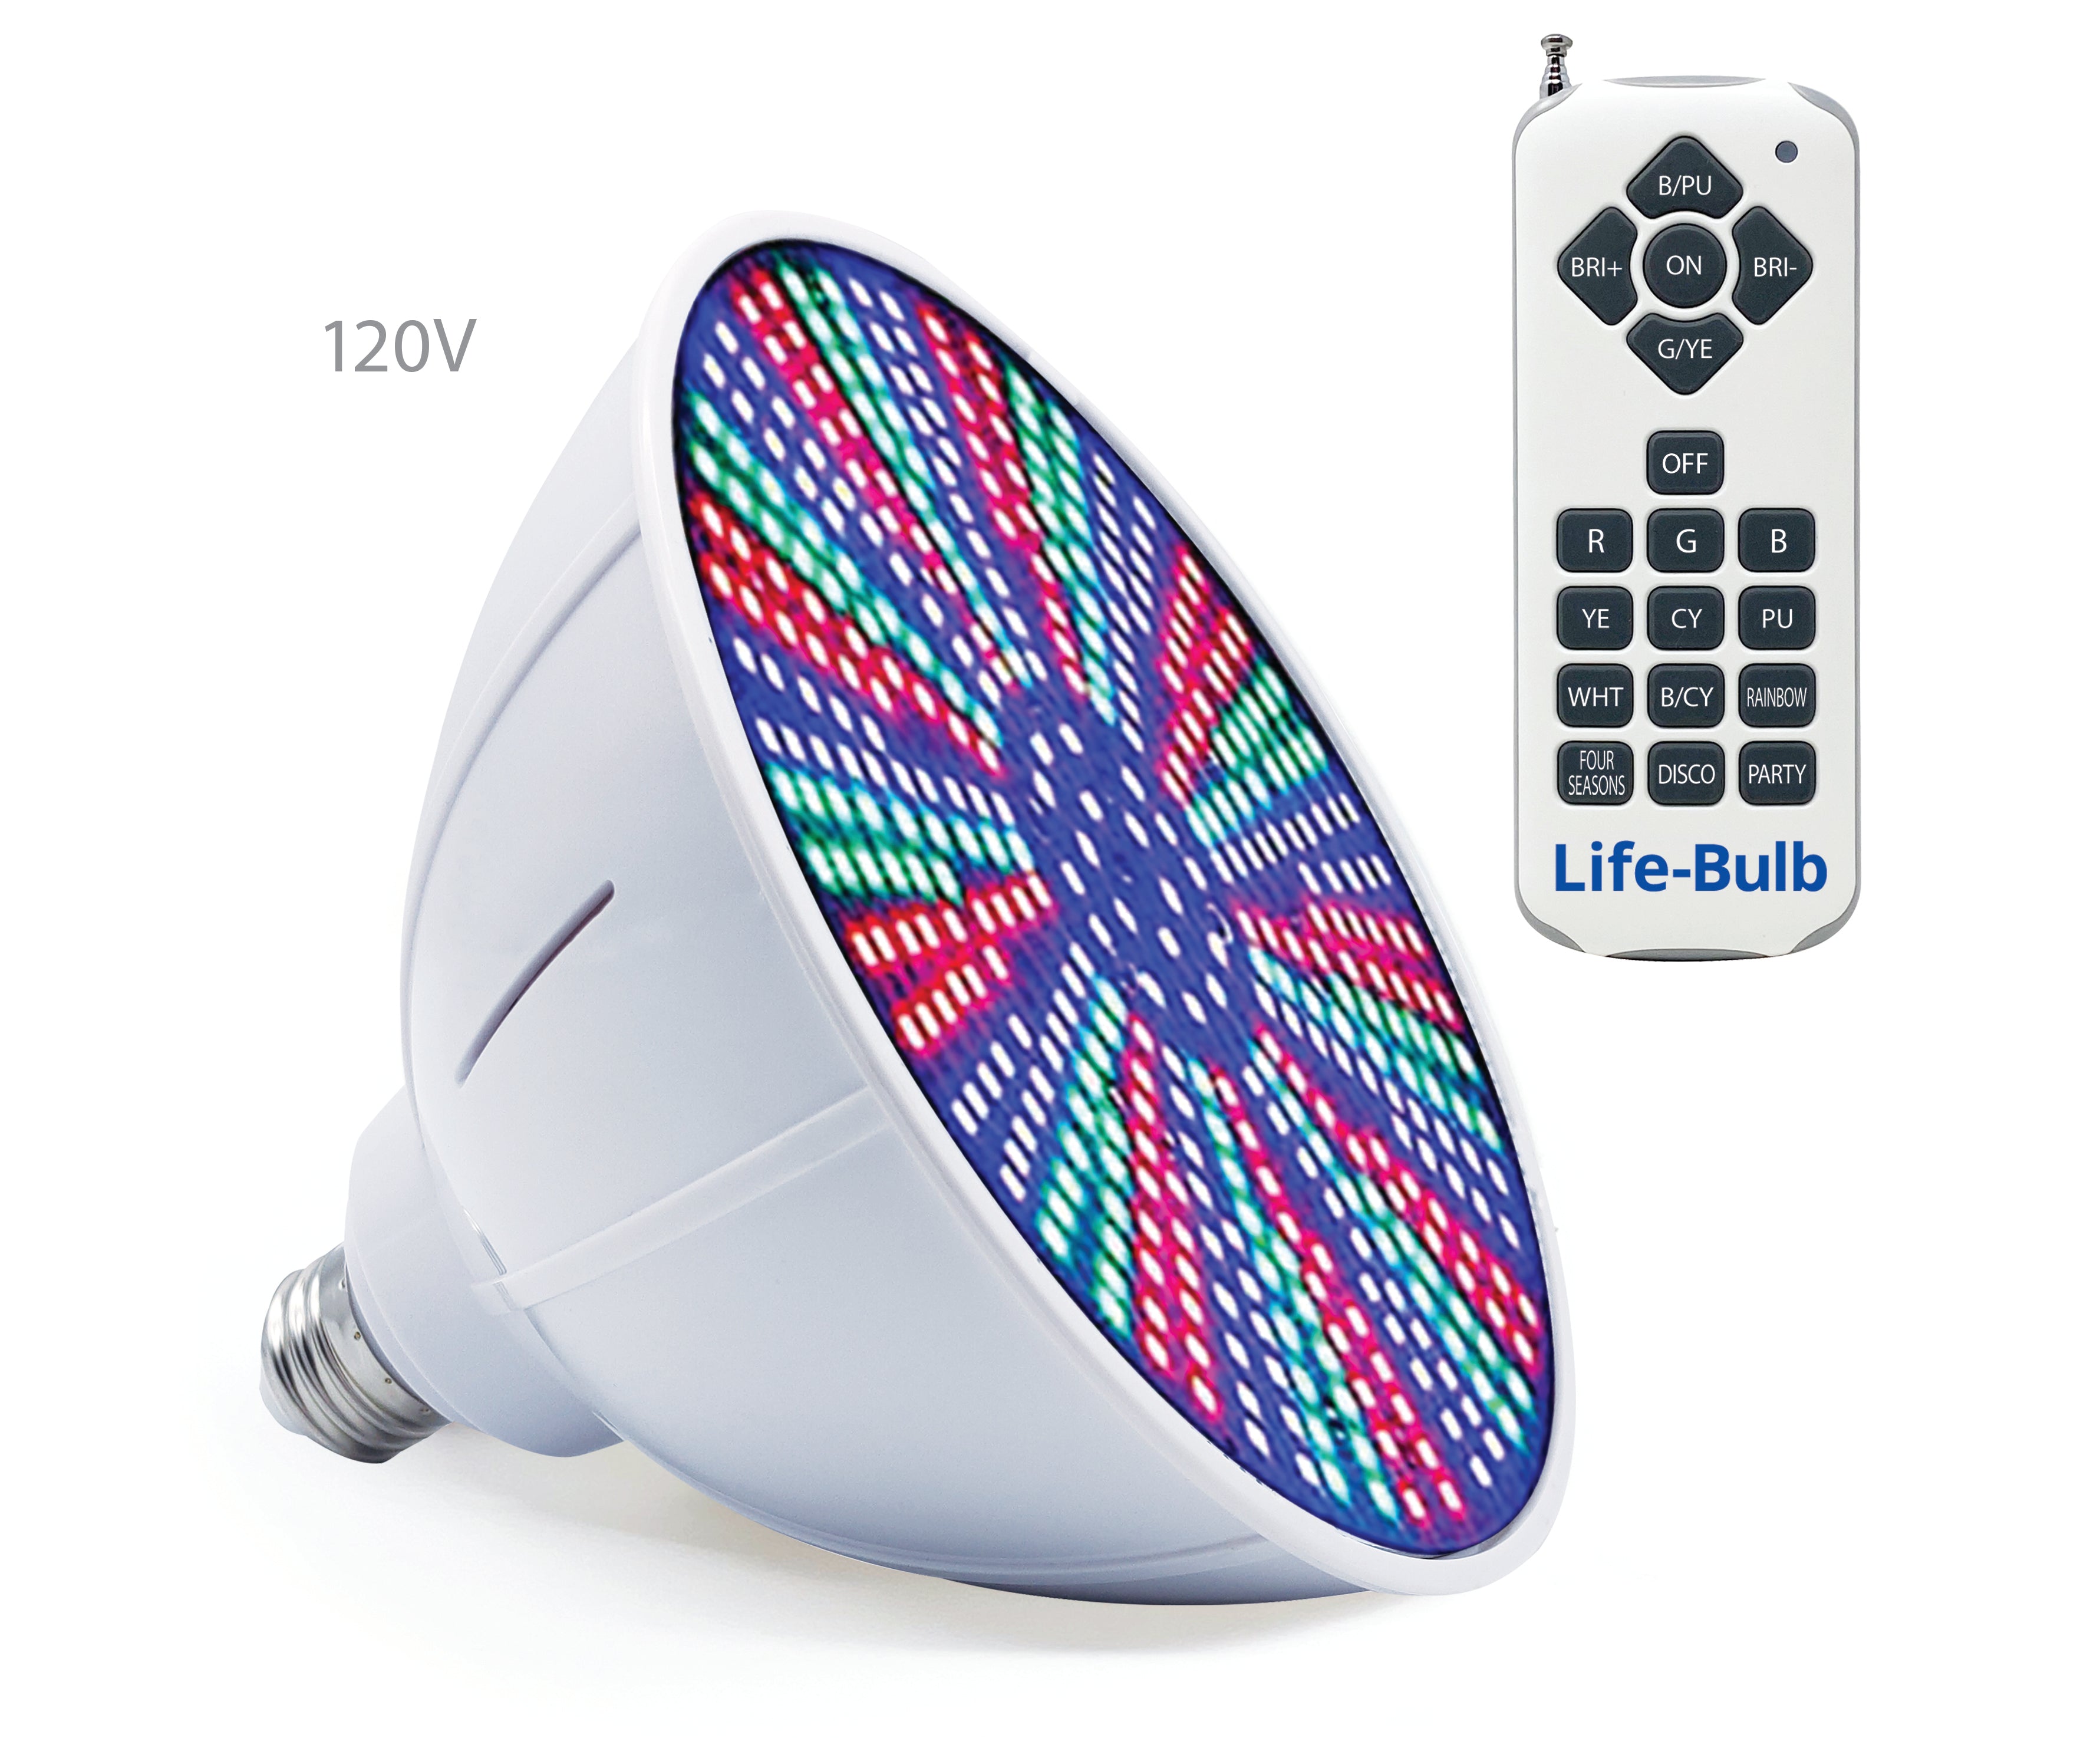 Life-Bulb 120 V 40 W RGB [Schalter oder Fernbedienung] LED-Pool-Glühbirne | Farbwechsel | Lebenslange Ersatzgarantie | Ersatzbirne für Pentair- und Hayward-Leuchten